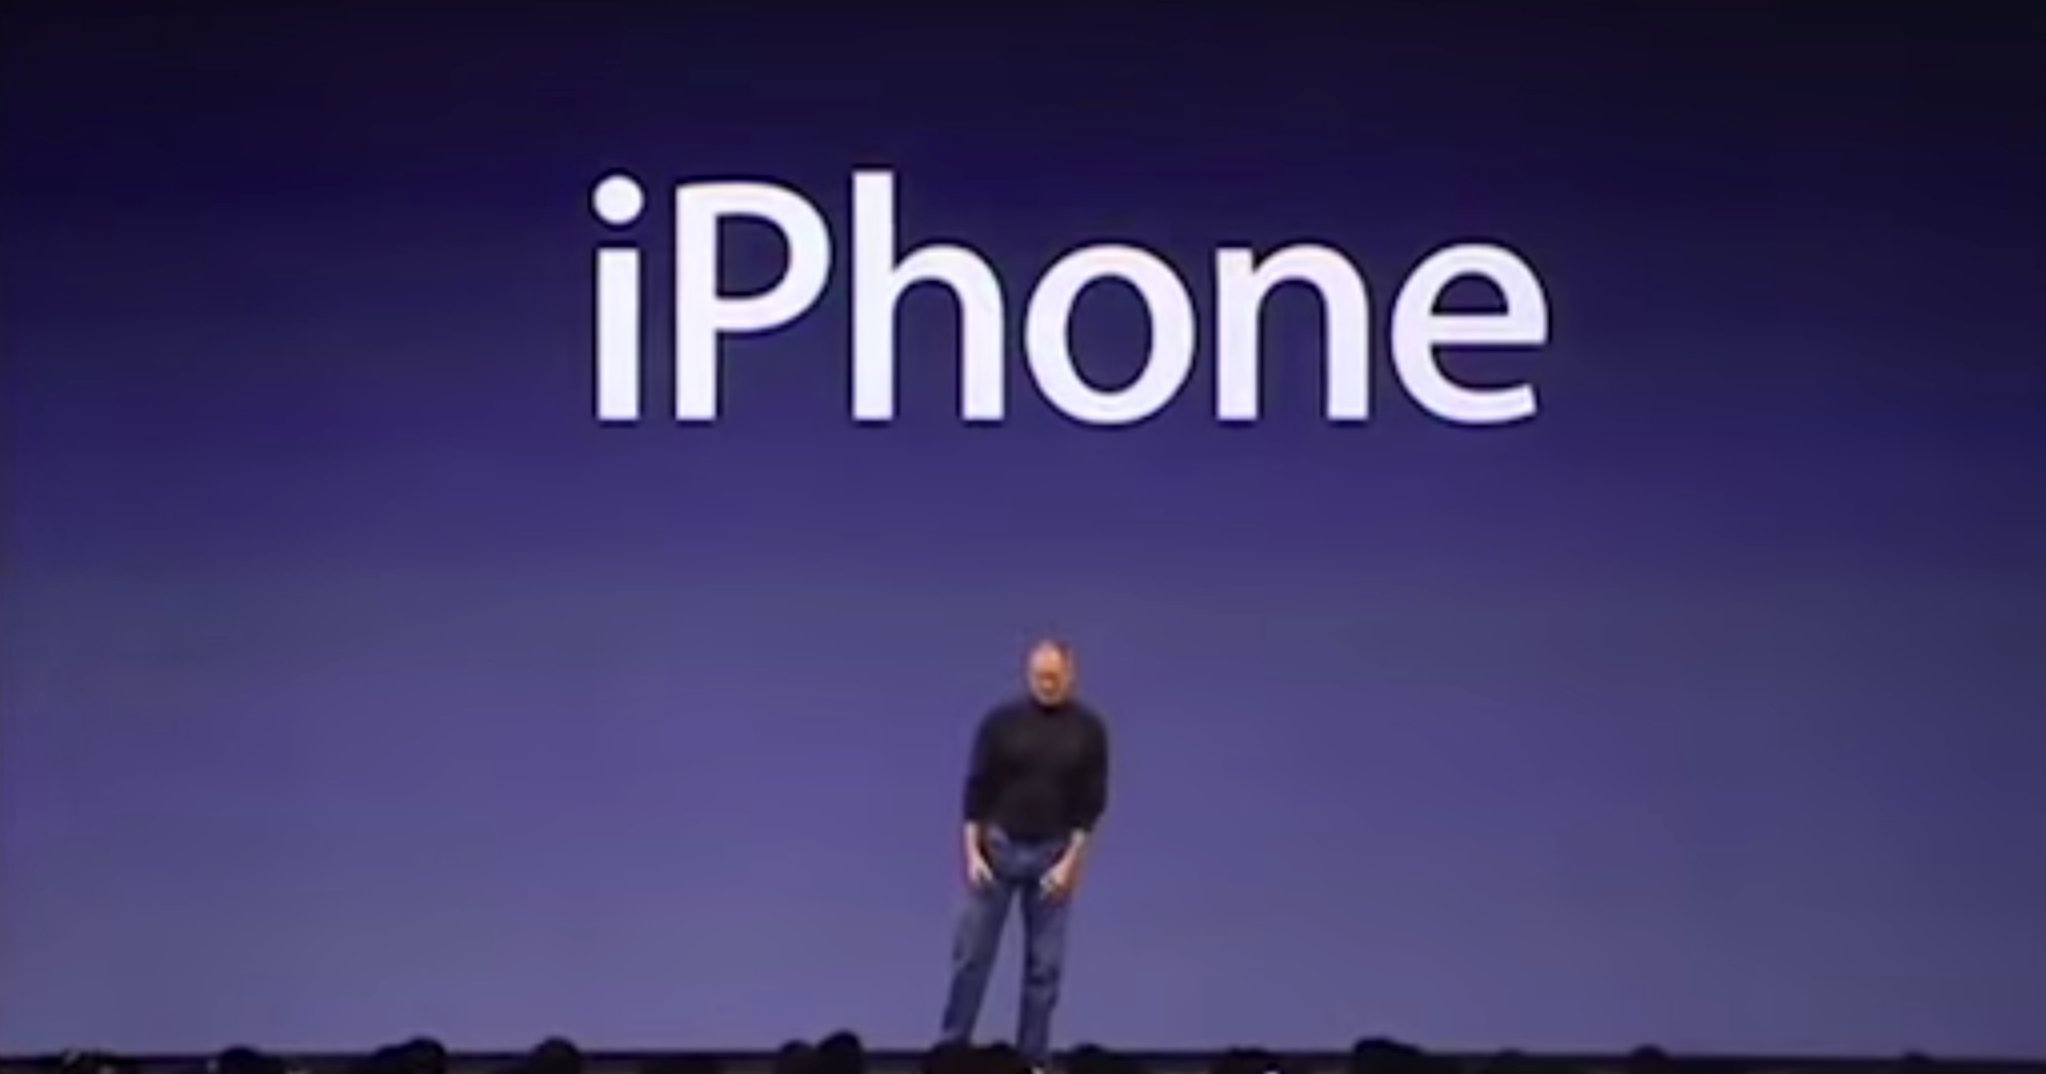 7 Jahre iPhone Geschichte: iPhone OS 1.0 bis iOS 8 im Video 4